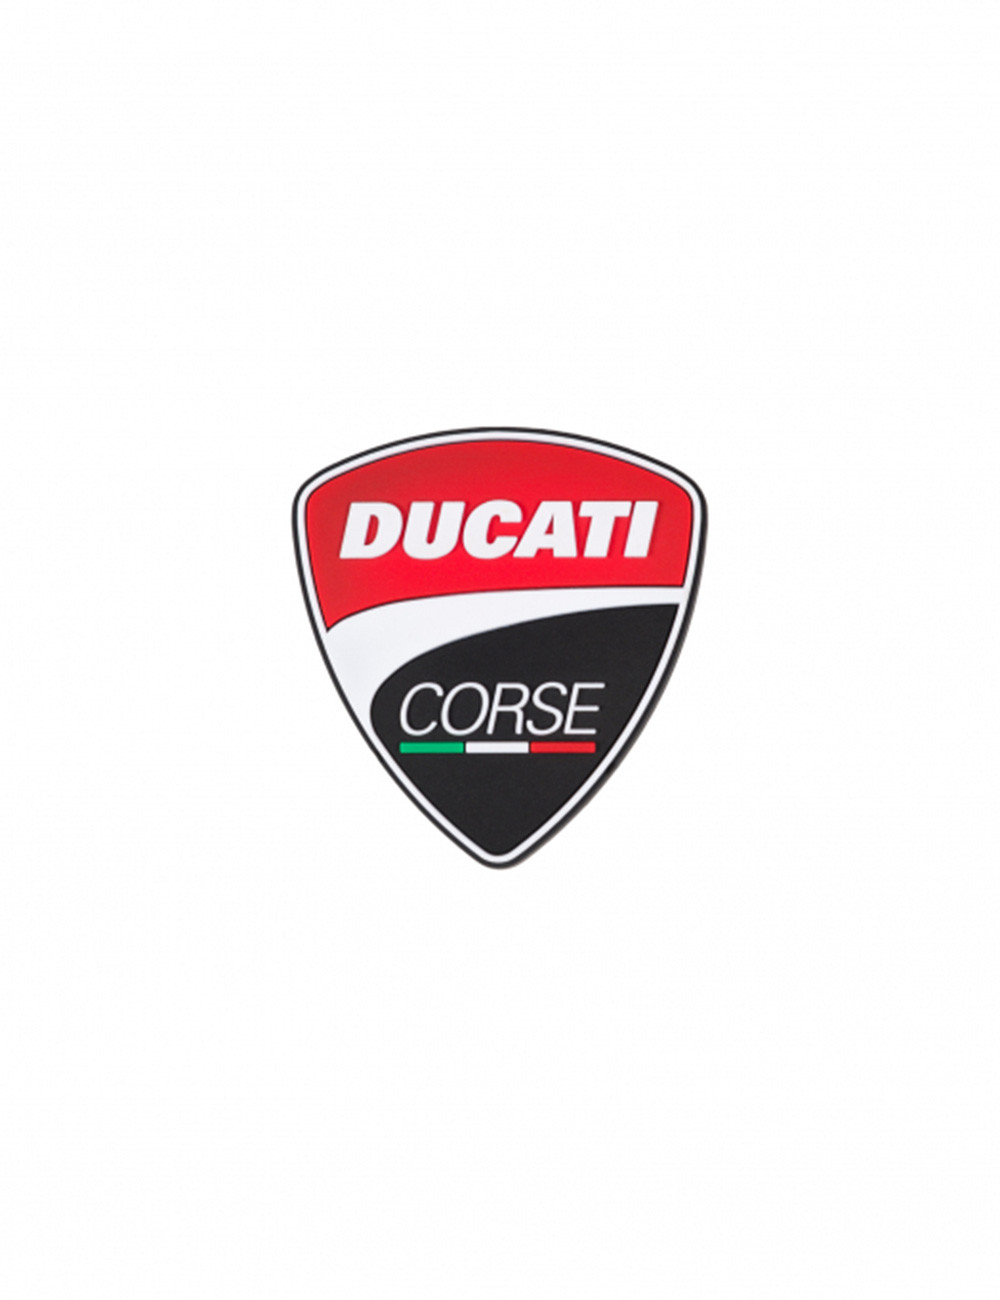 Ducati Corse Magnet | Official Ducati Store